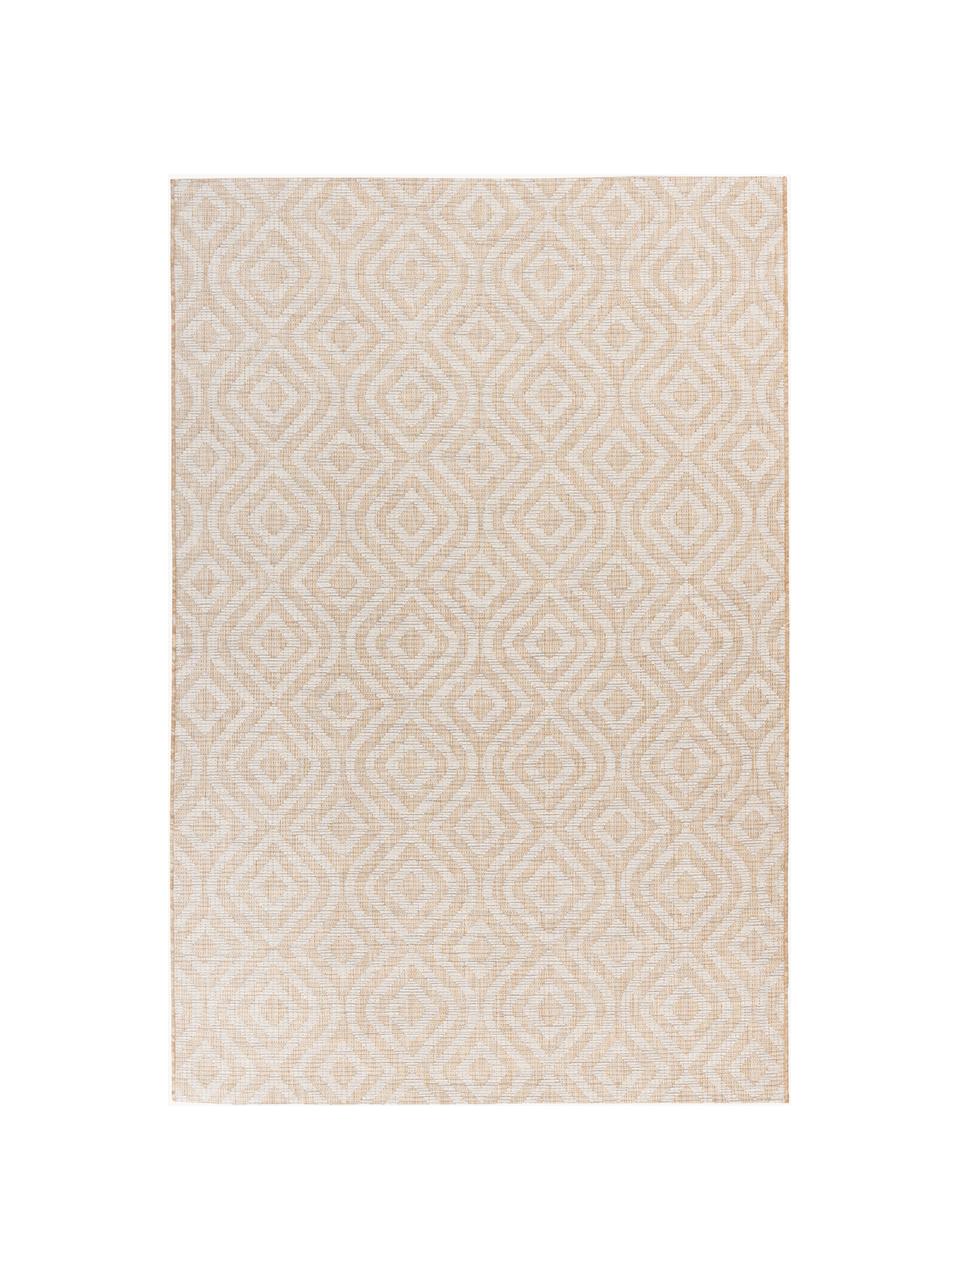 Interiérový a exterirérový koberec s grafickým vzorem Muster, 100 % polypropylen, Béžová, tlumeně bílá, Š 80 cm, D 150 cm (velikost XS)